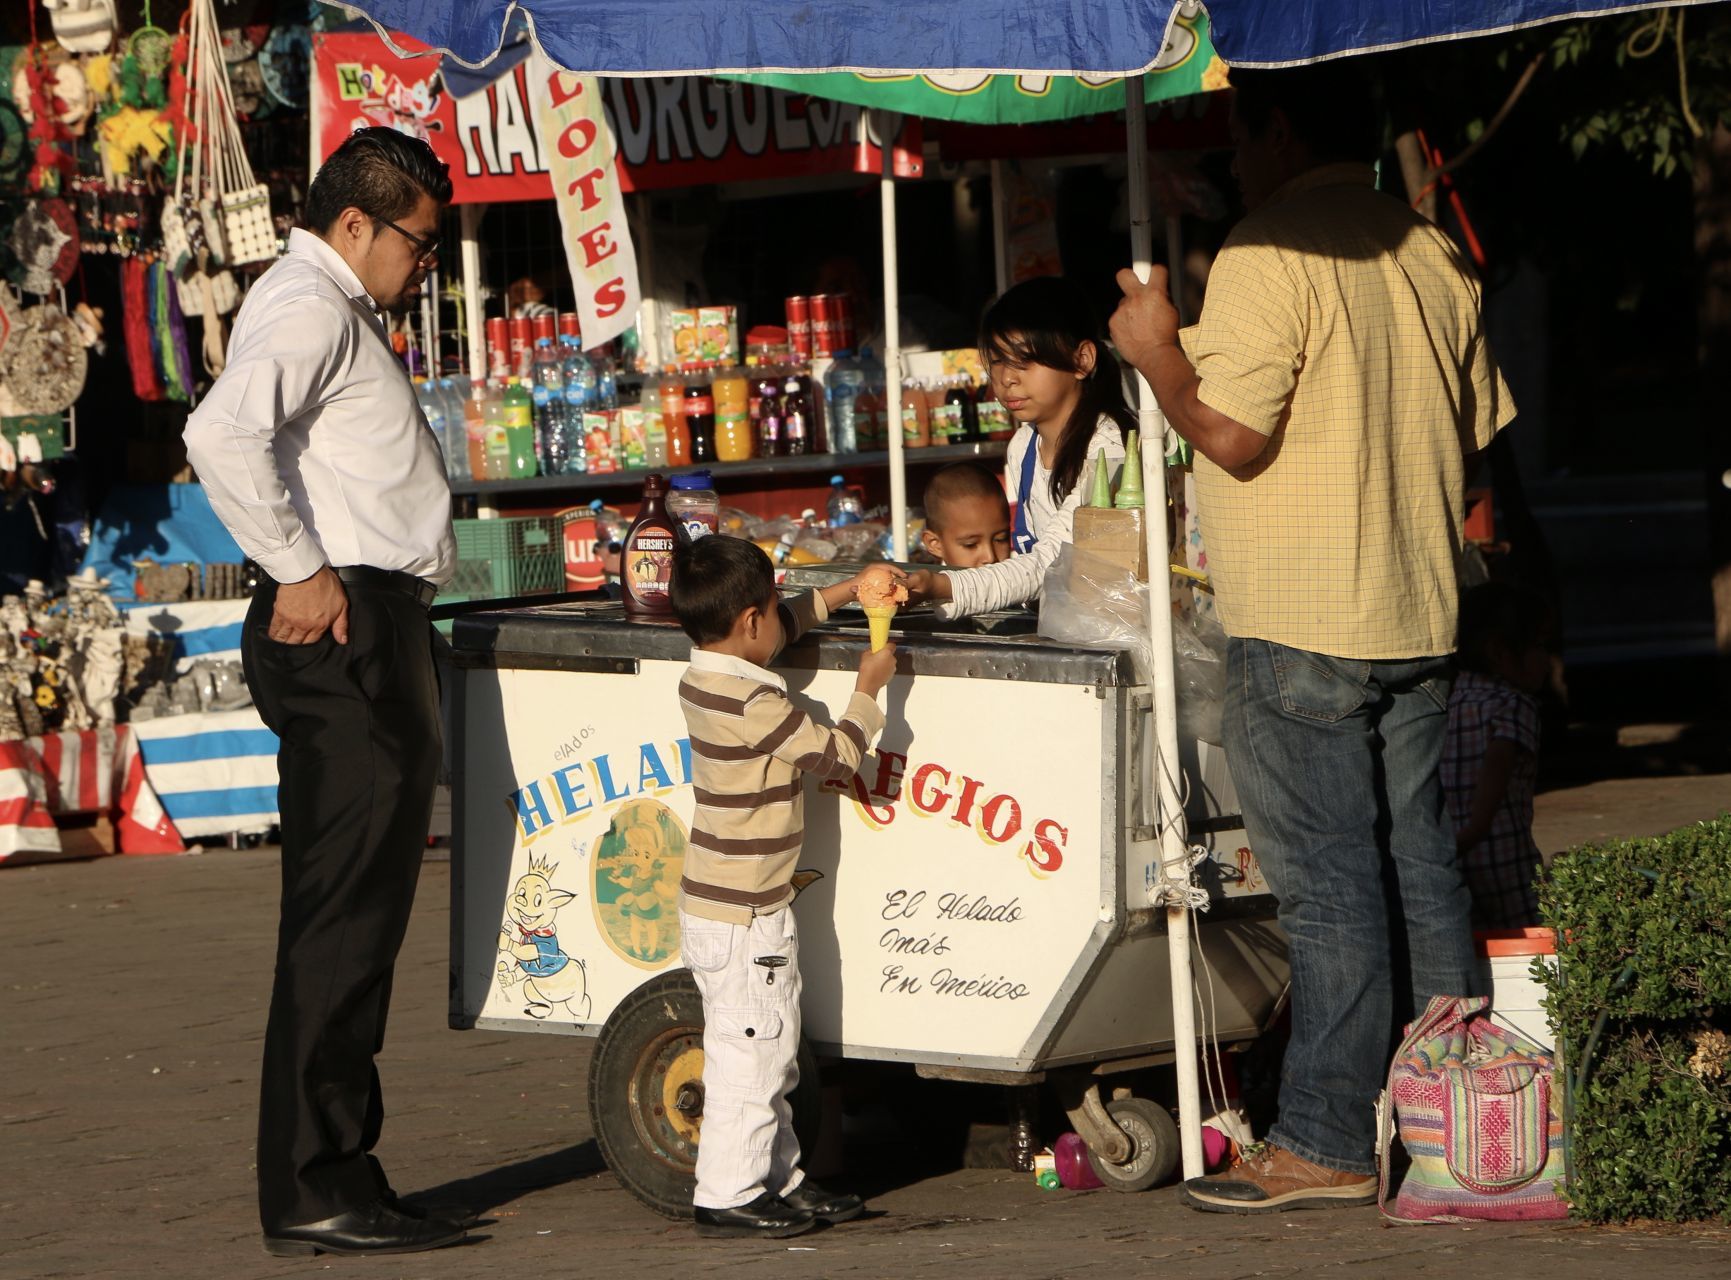 Las escuelas mexicanas promueven la obesidad, aseguraron expertos